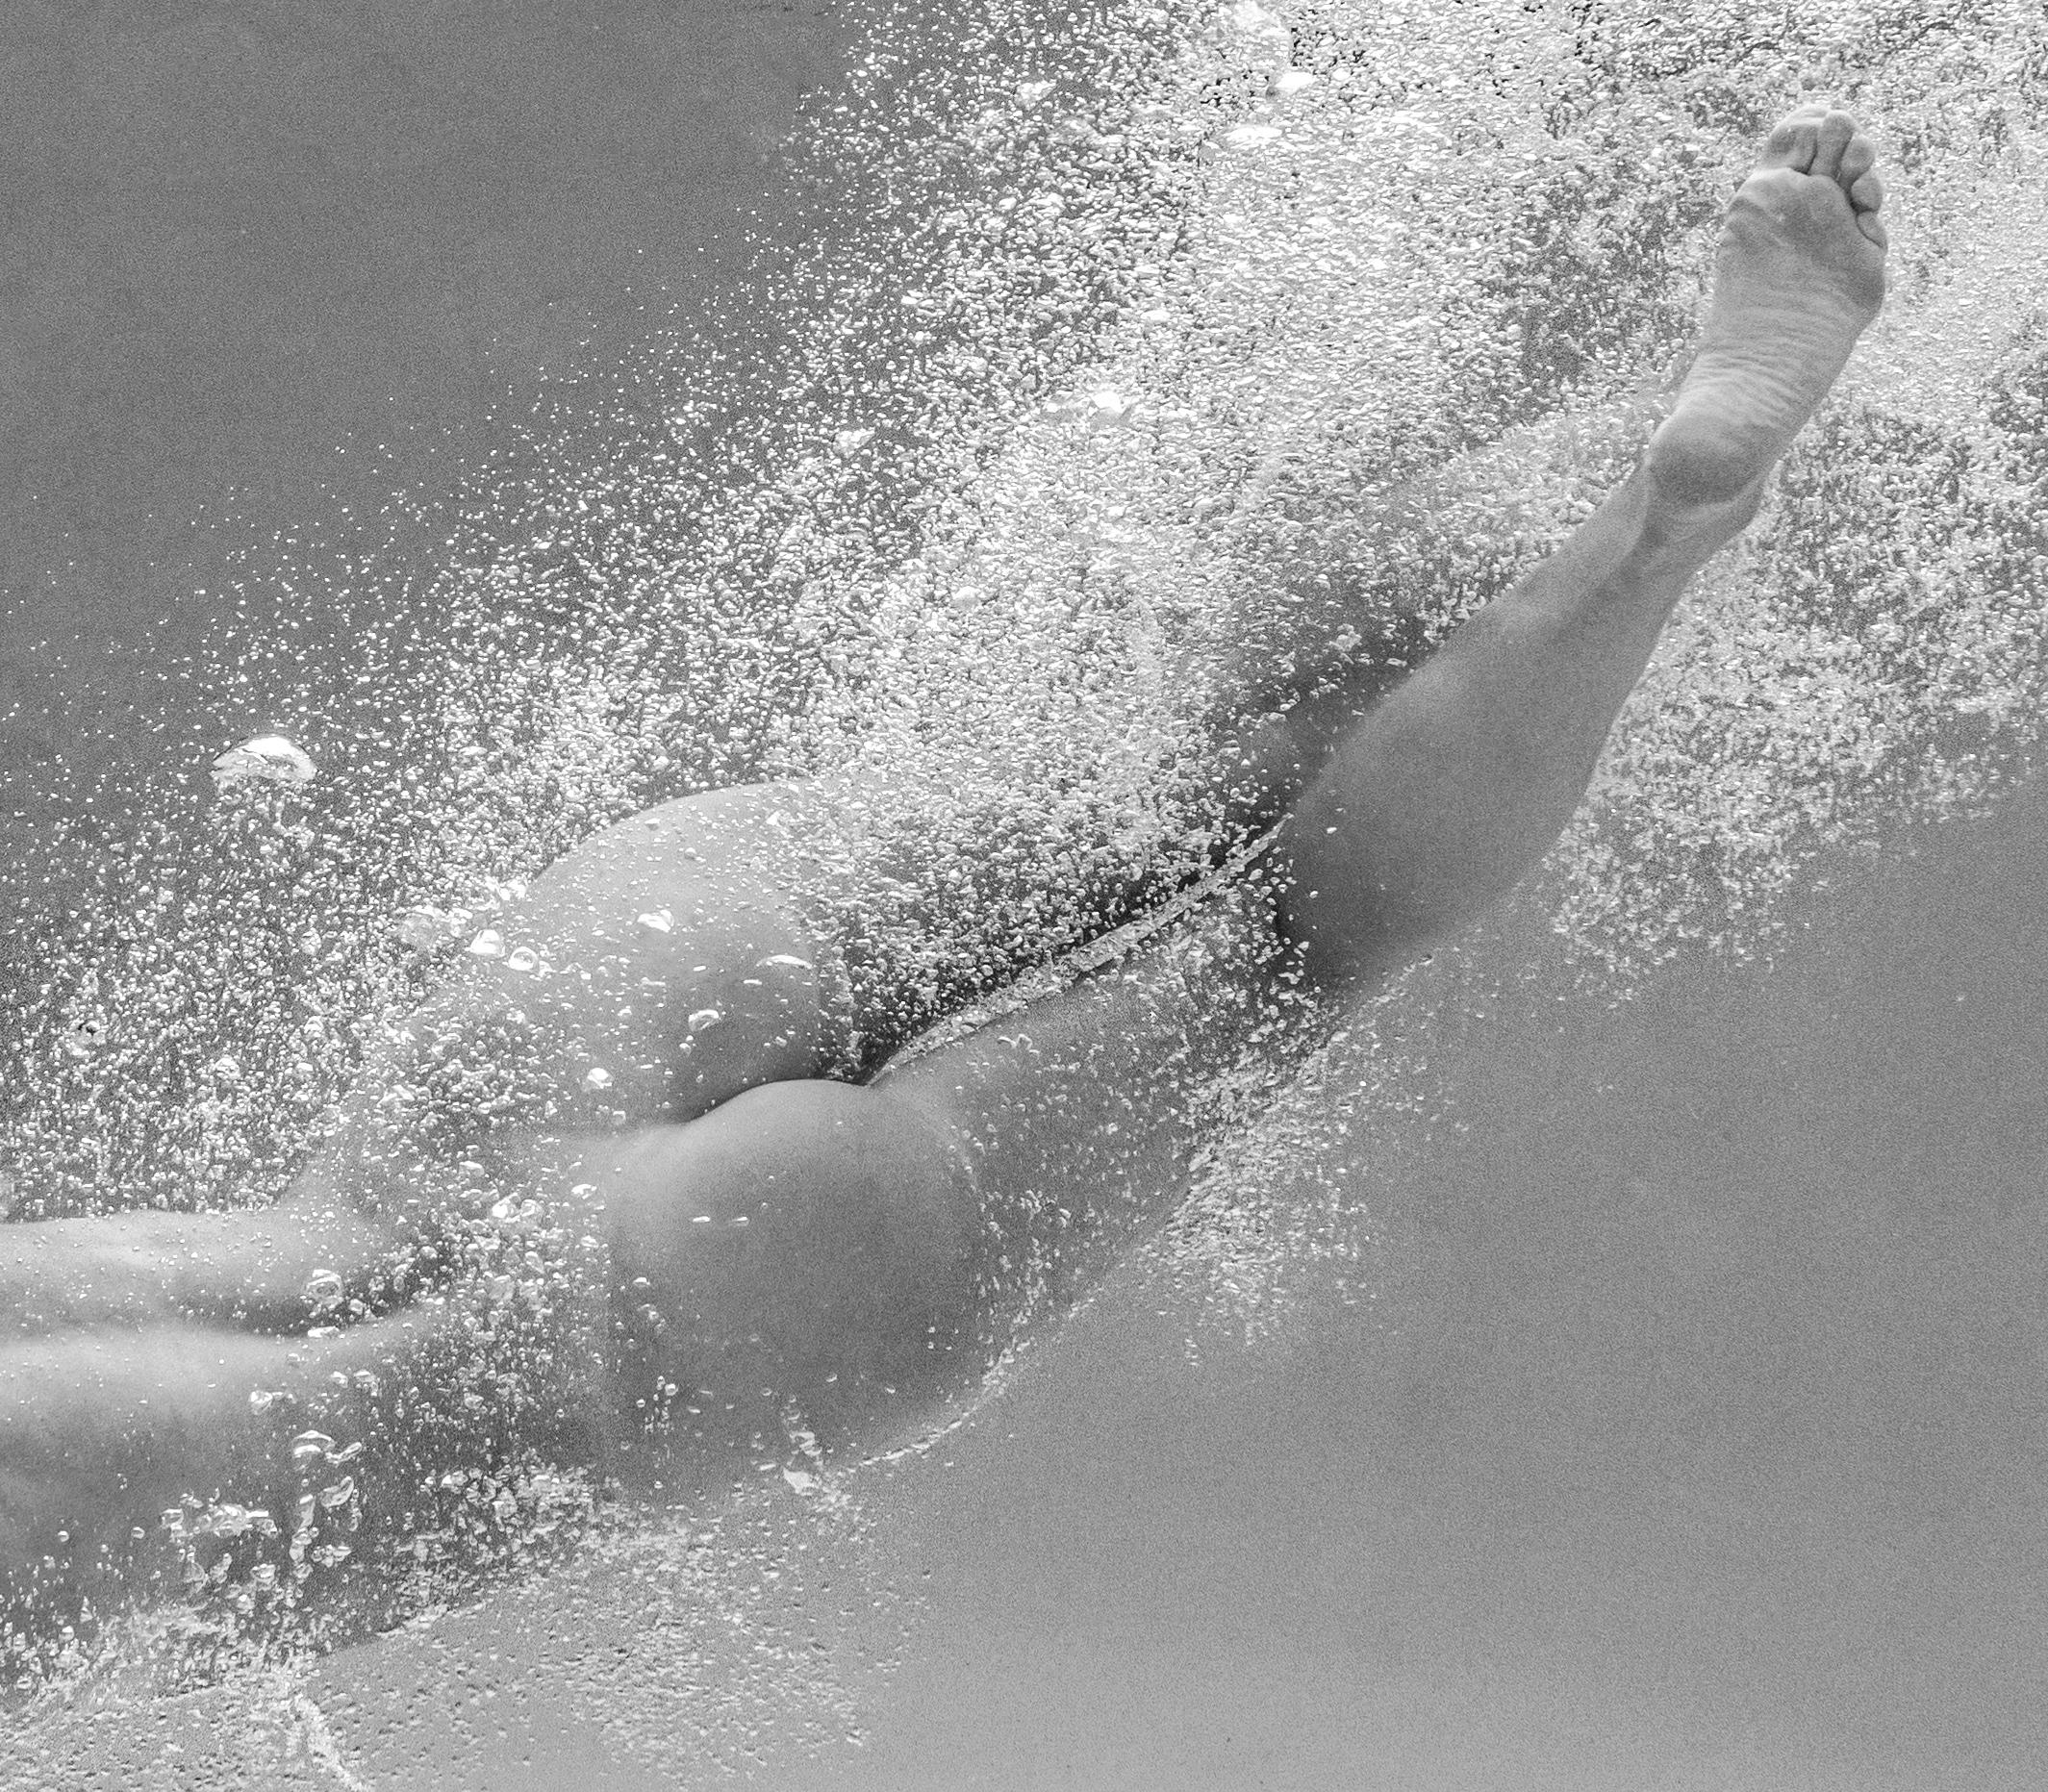 Eine Unterwasser-Schwarz-Weiß-Aufnahme einer jungen nackten Frau in einem Schwimmbecken.  

Original-Digitaldruck auf Aluminiumplatte, vom Künstler signiert.
Limitierte Auflage von 12 Stück. Druck #2
Das Kunstwerk ist mit einem Echtheitszertifikat